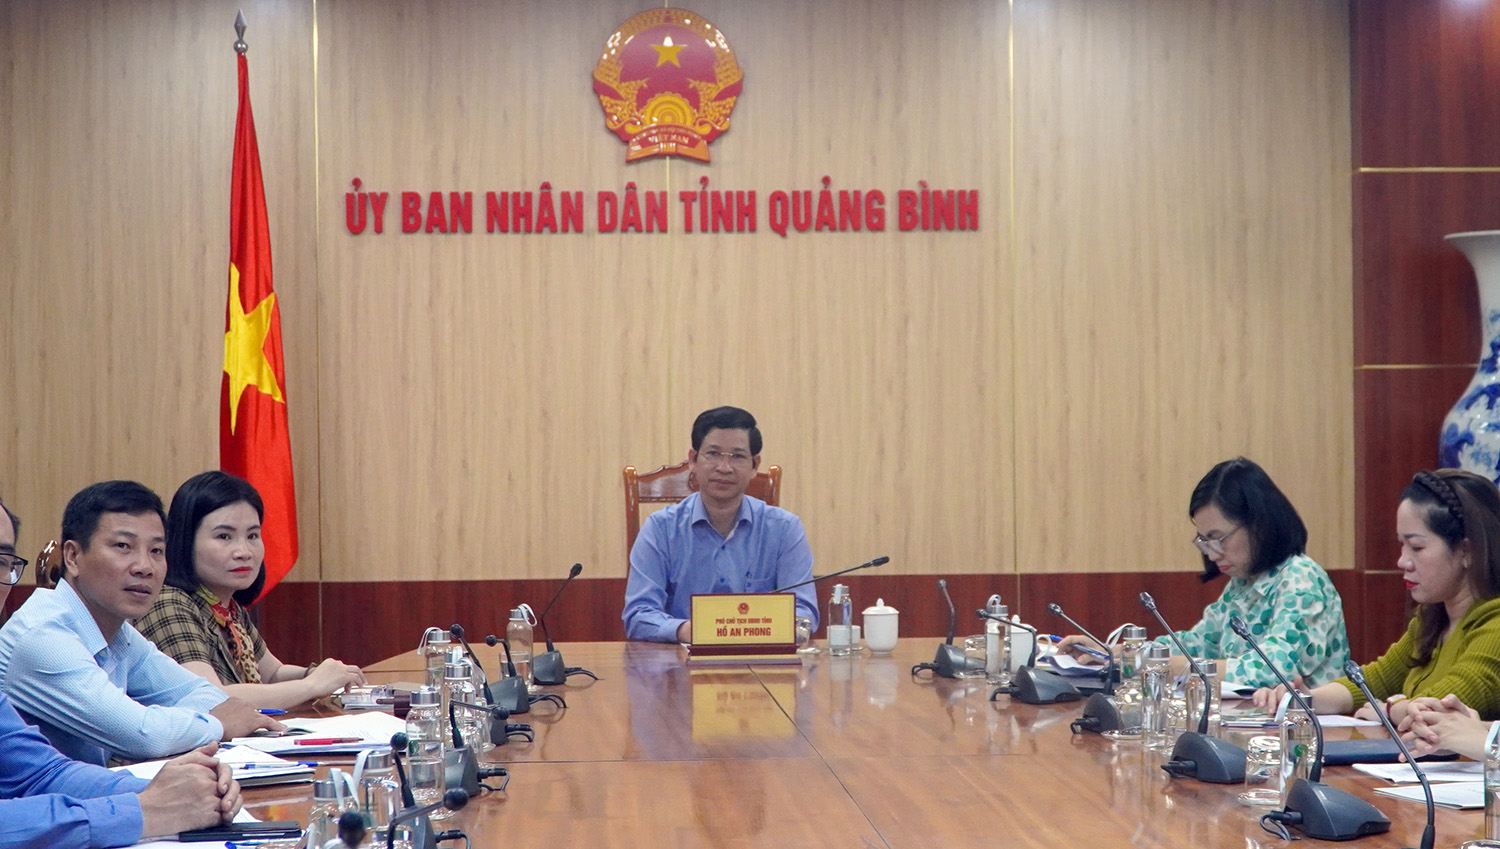 Đồng chí Phó Chủ tịch UBND tỉnh Hồ An Phong chủ trì hội nghị tại điểm cầu Quảng Bình